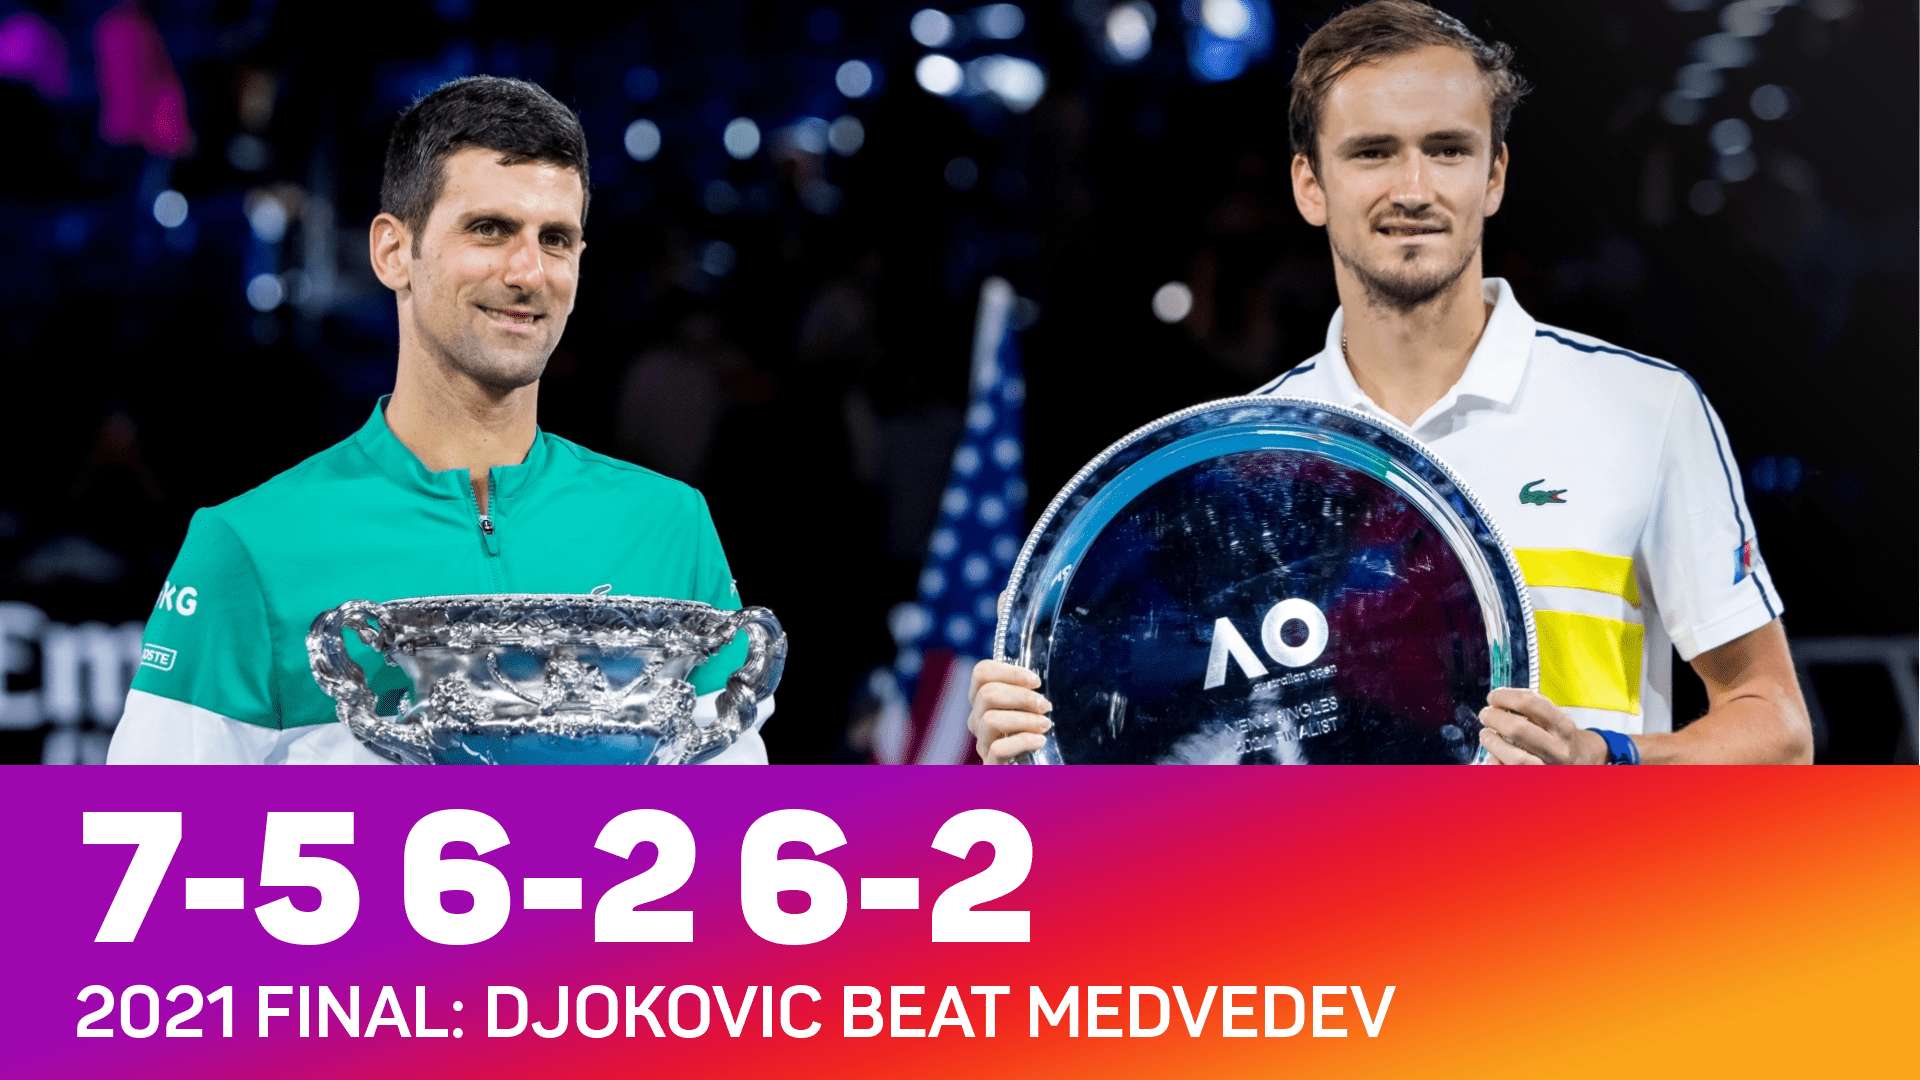 Djokovic beat Medvedev